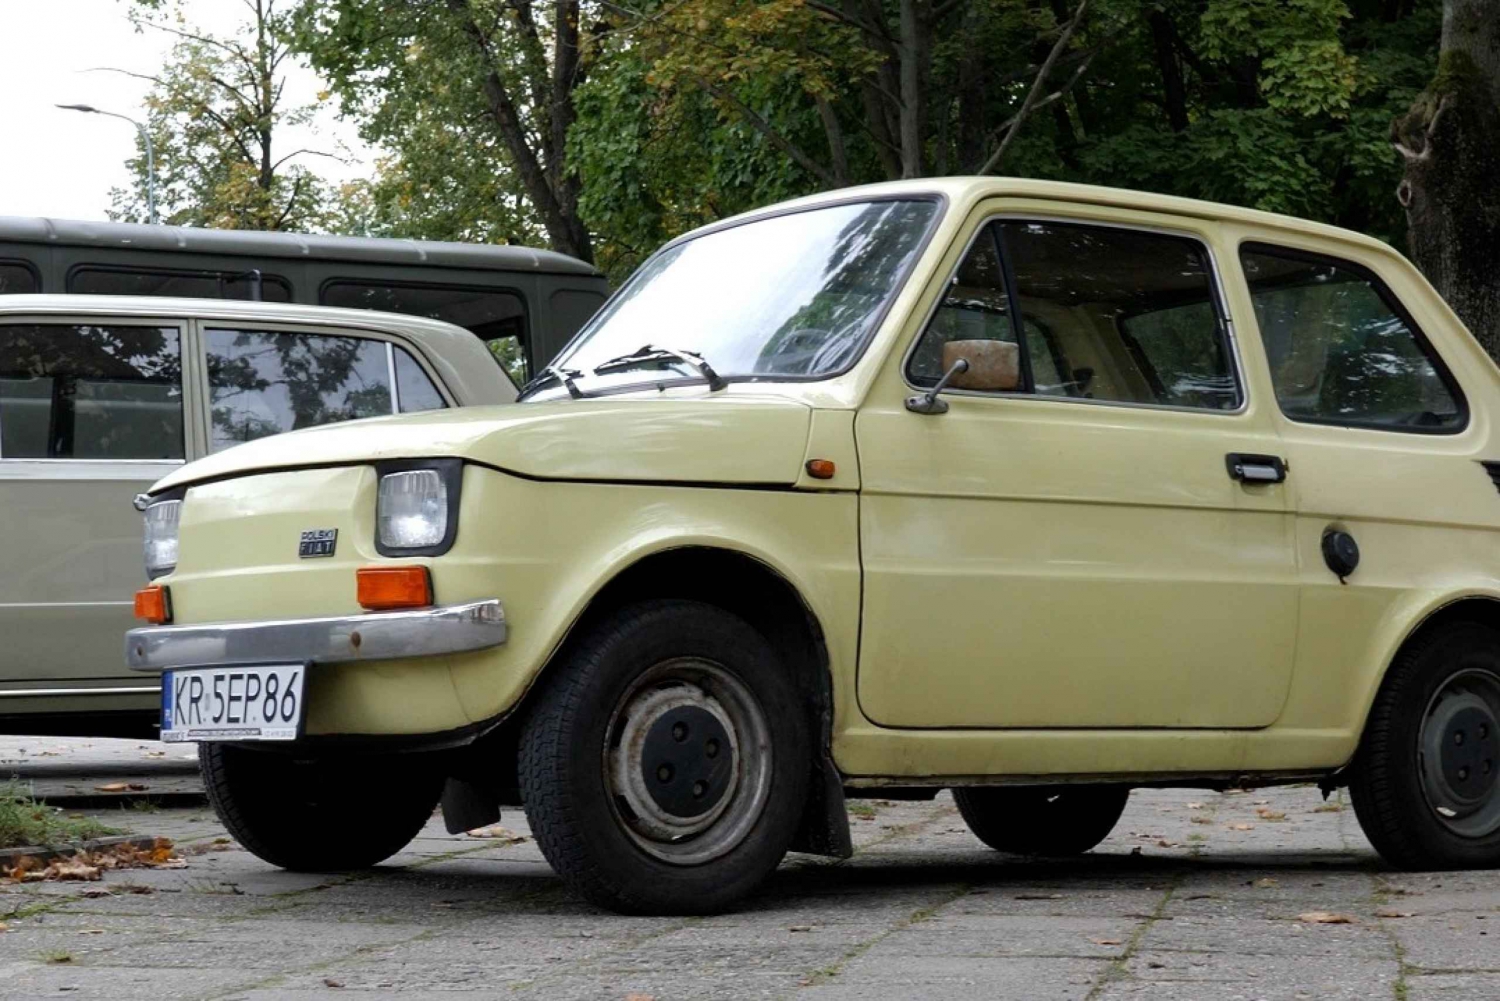 Krakau: rondleiding door Nowa Huta in een auto uit het communistische tijdperk